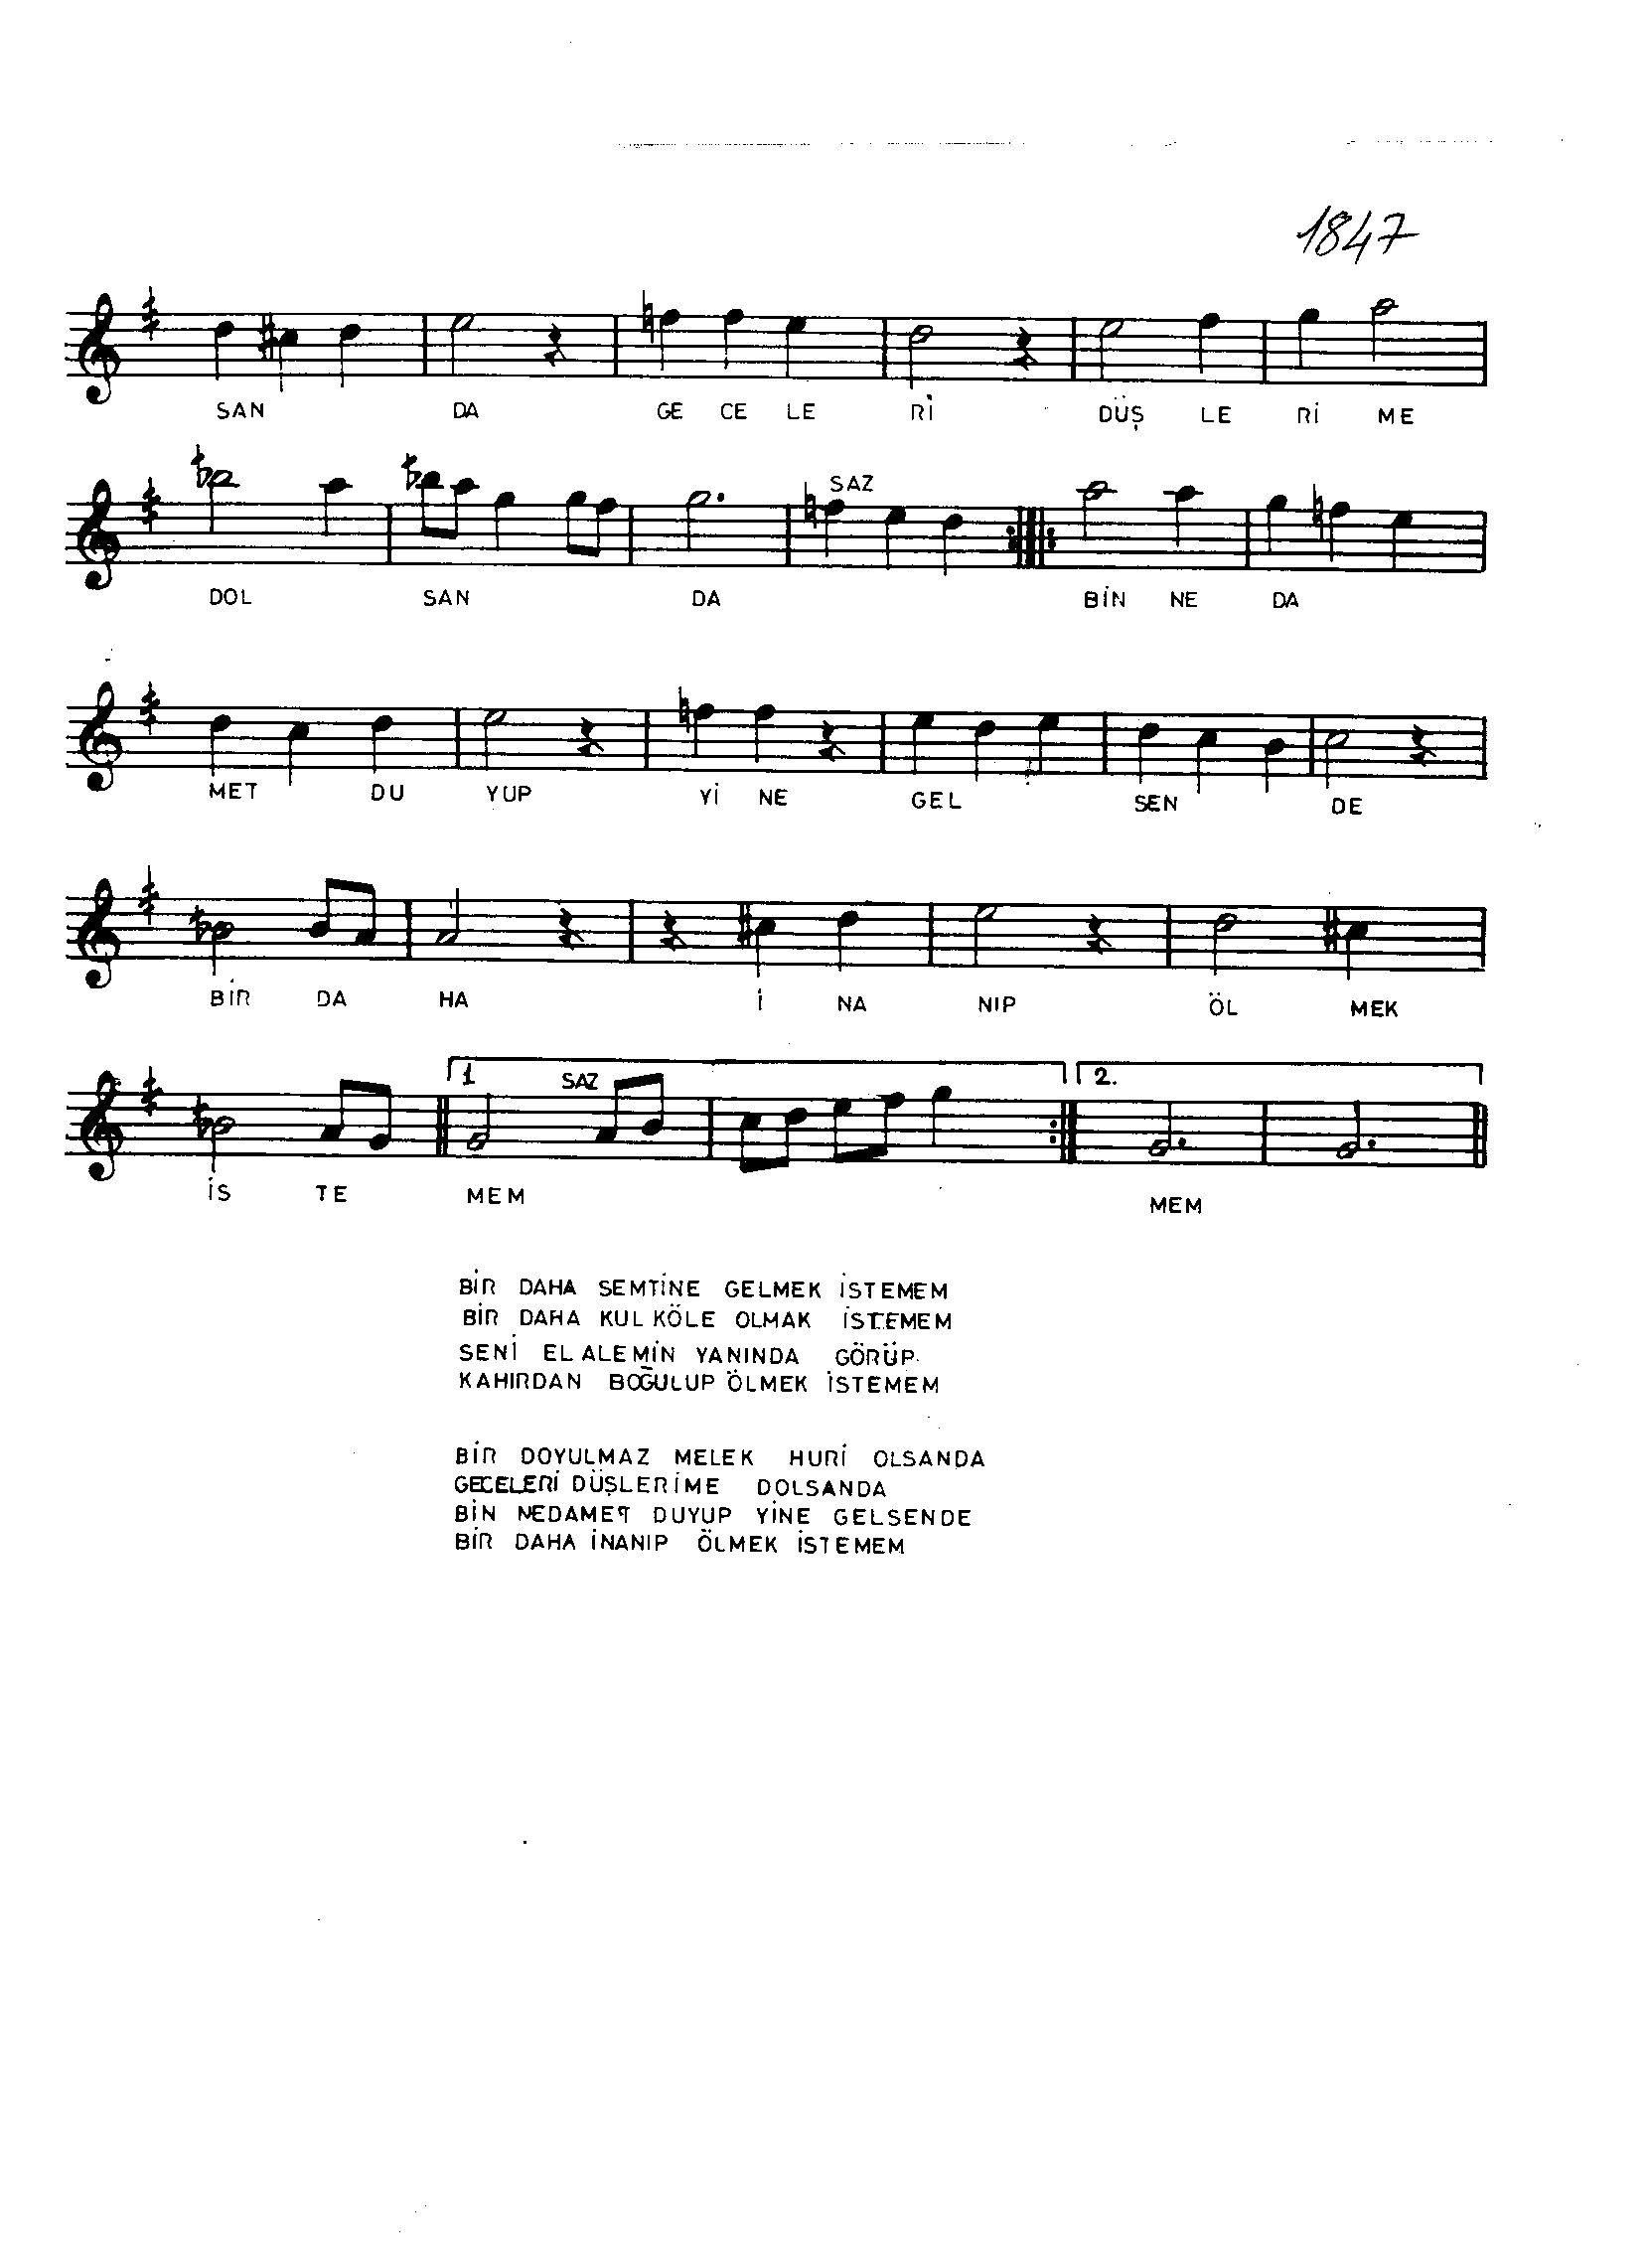 Zâvil - Şarkı - Fethi Karamahmudoğlu - Sayfa 2